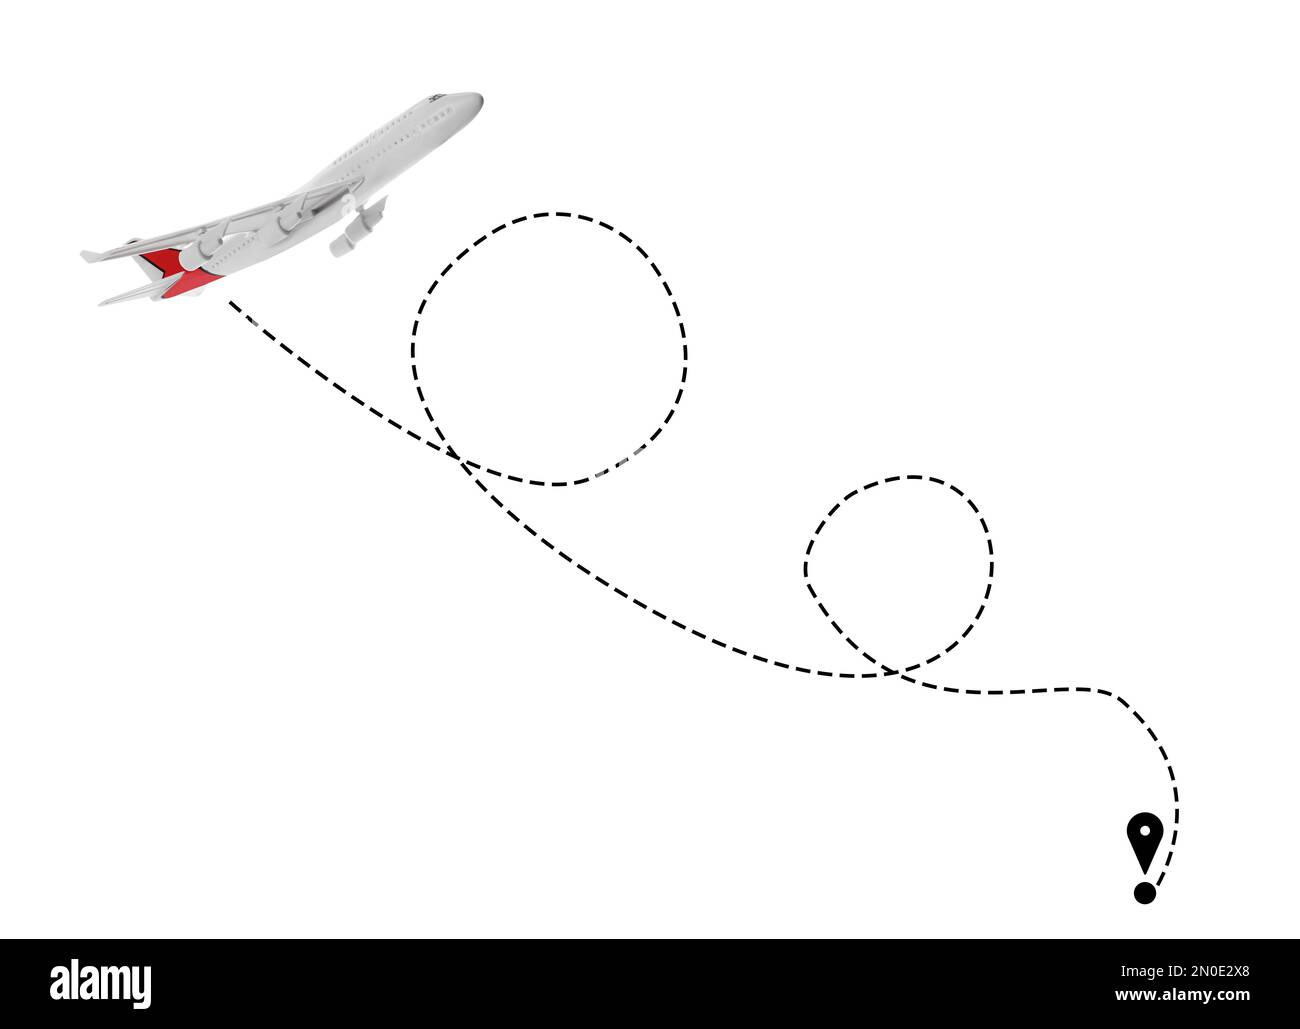 Illustrazione della direzione del volo. Piano e perno collegati da una linea tratteggiata su sfondo bianco Foto Stock